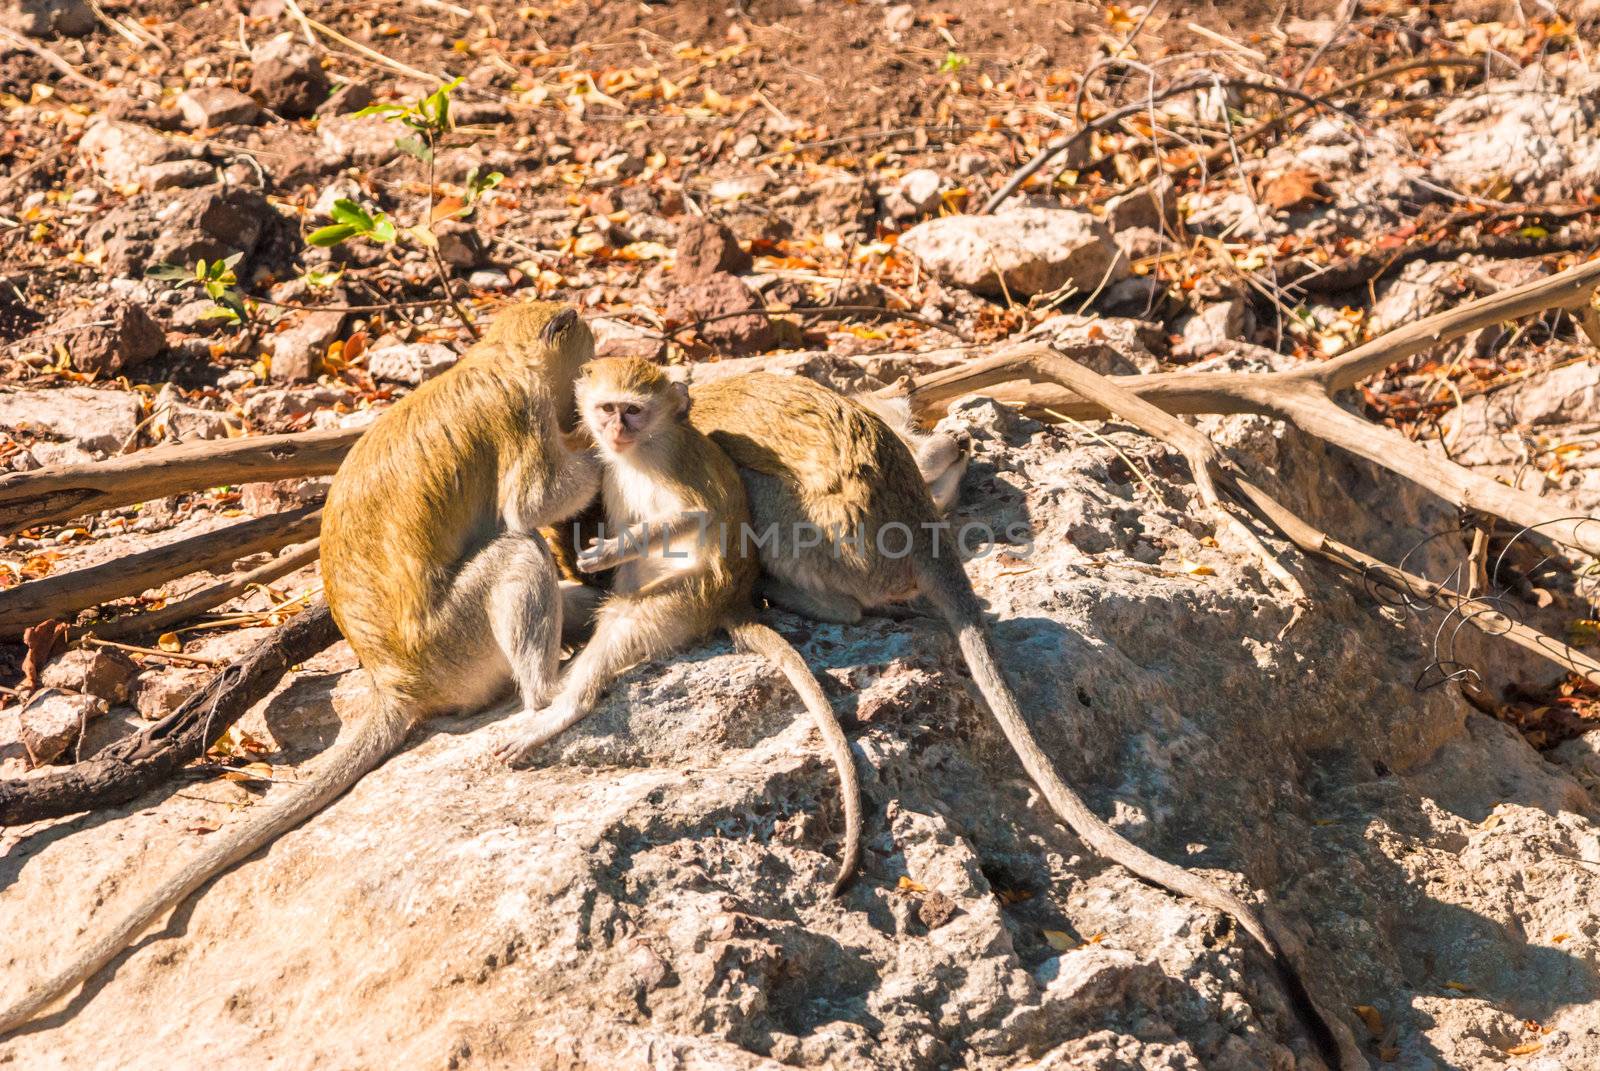 Vervet monkeys (Cercopithecus aethiops), Chobe National Park